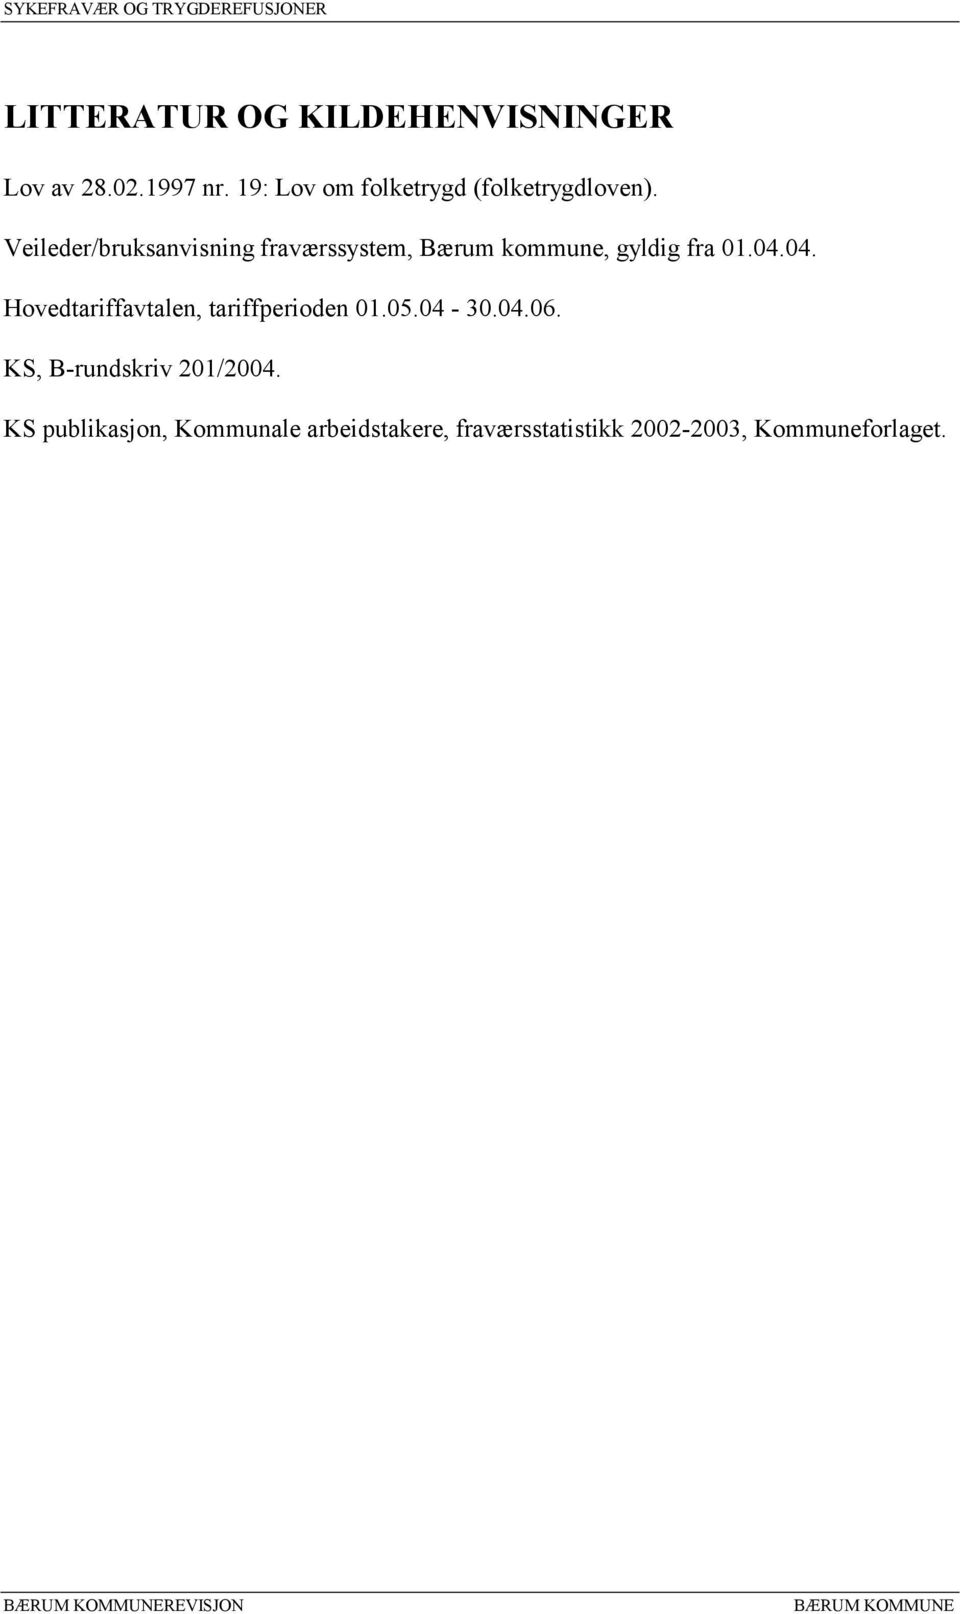 Veileder/bruksanvisning fraværssystem, Bærum kommune, gyldig fra 01.04.